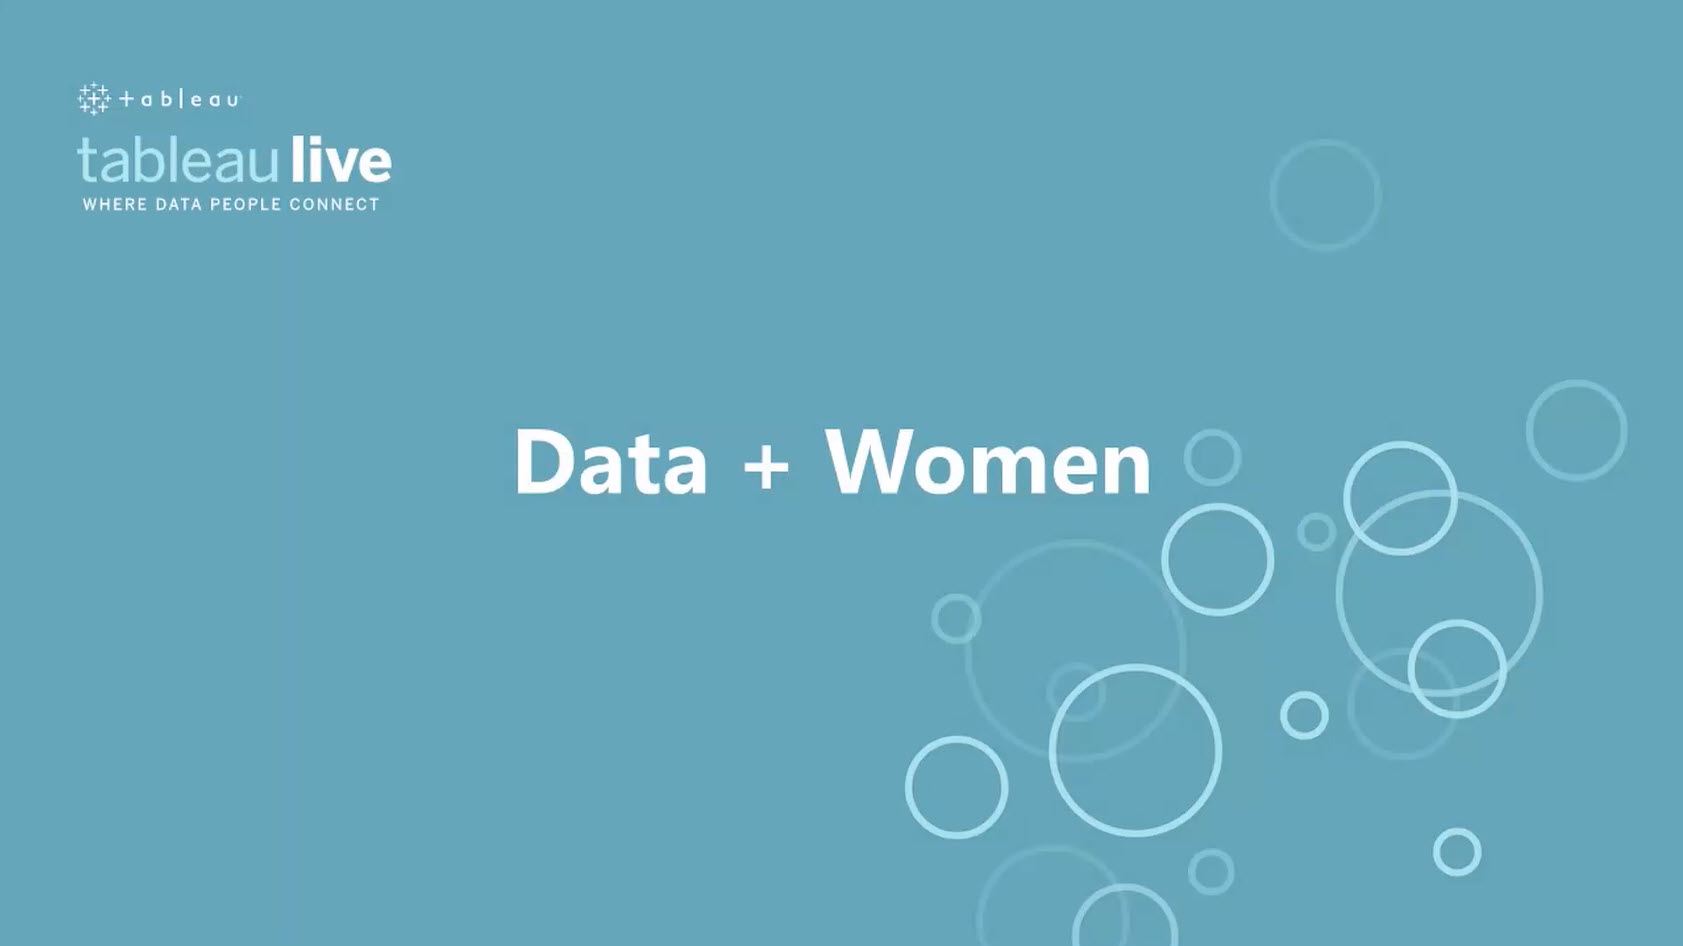 Ir a Data + Women